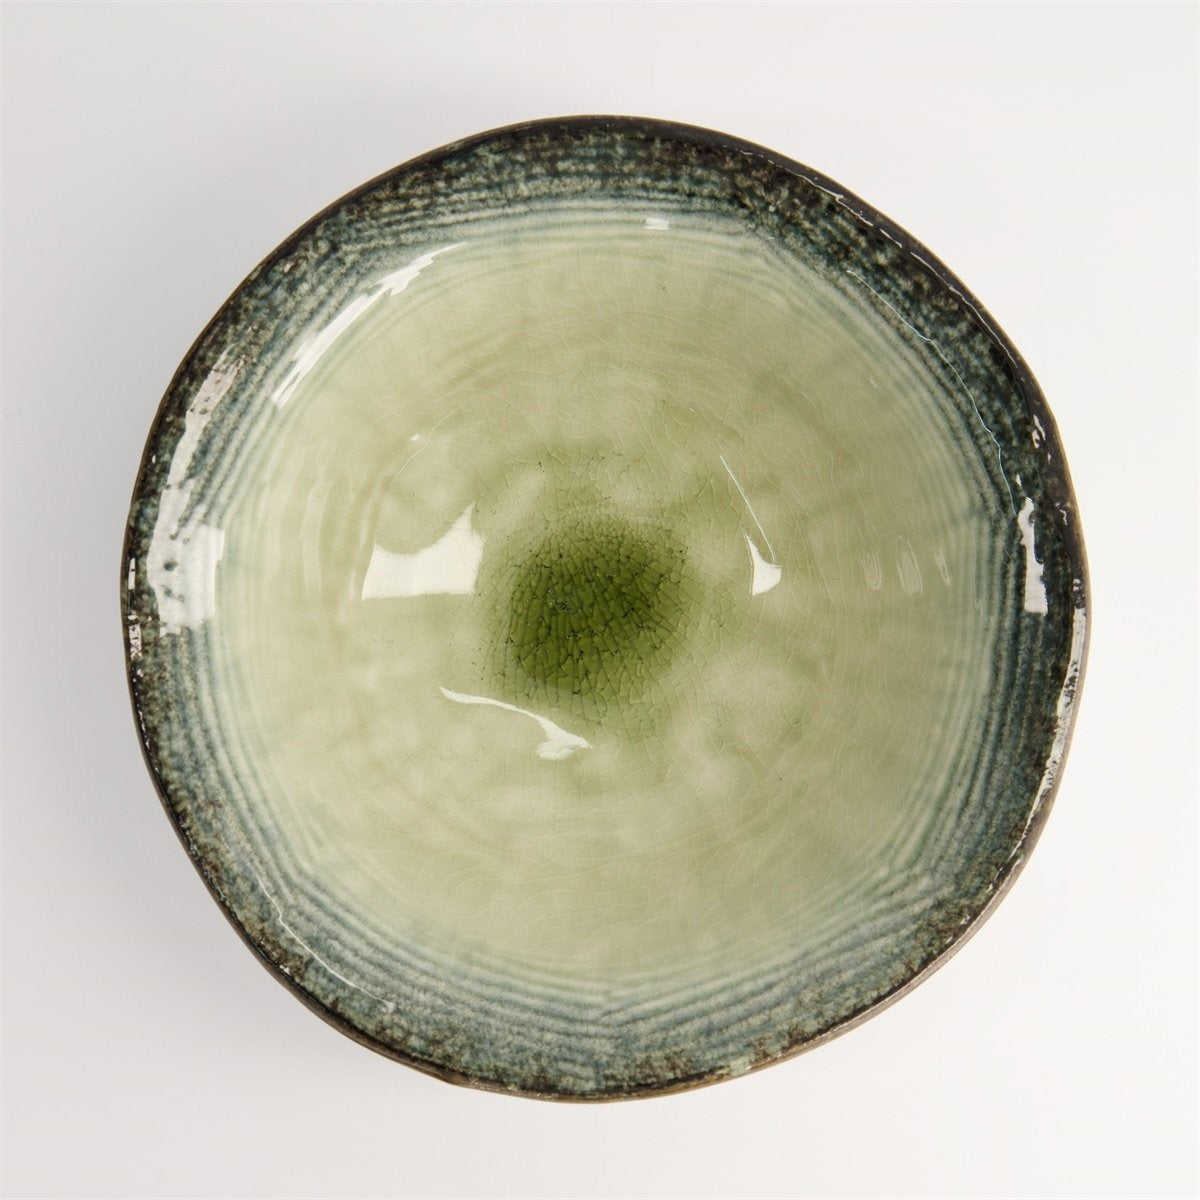 Glassy Green Yamasaky Organic Ramen Bowl